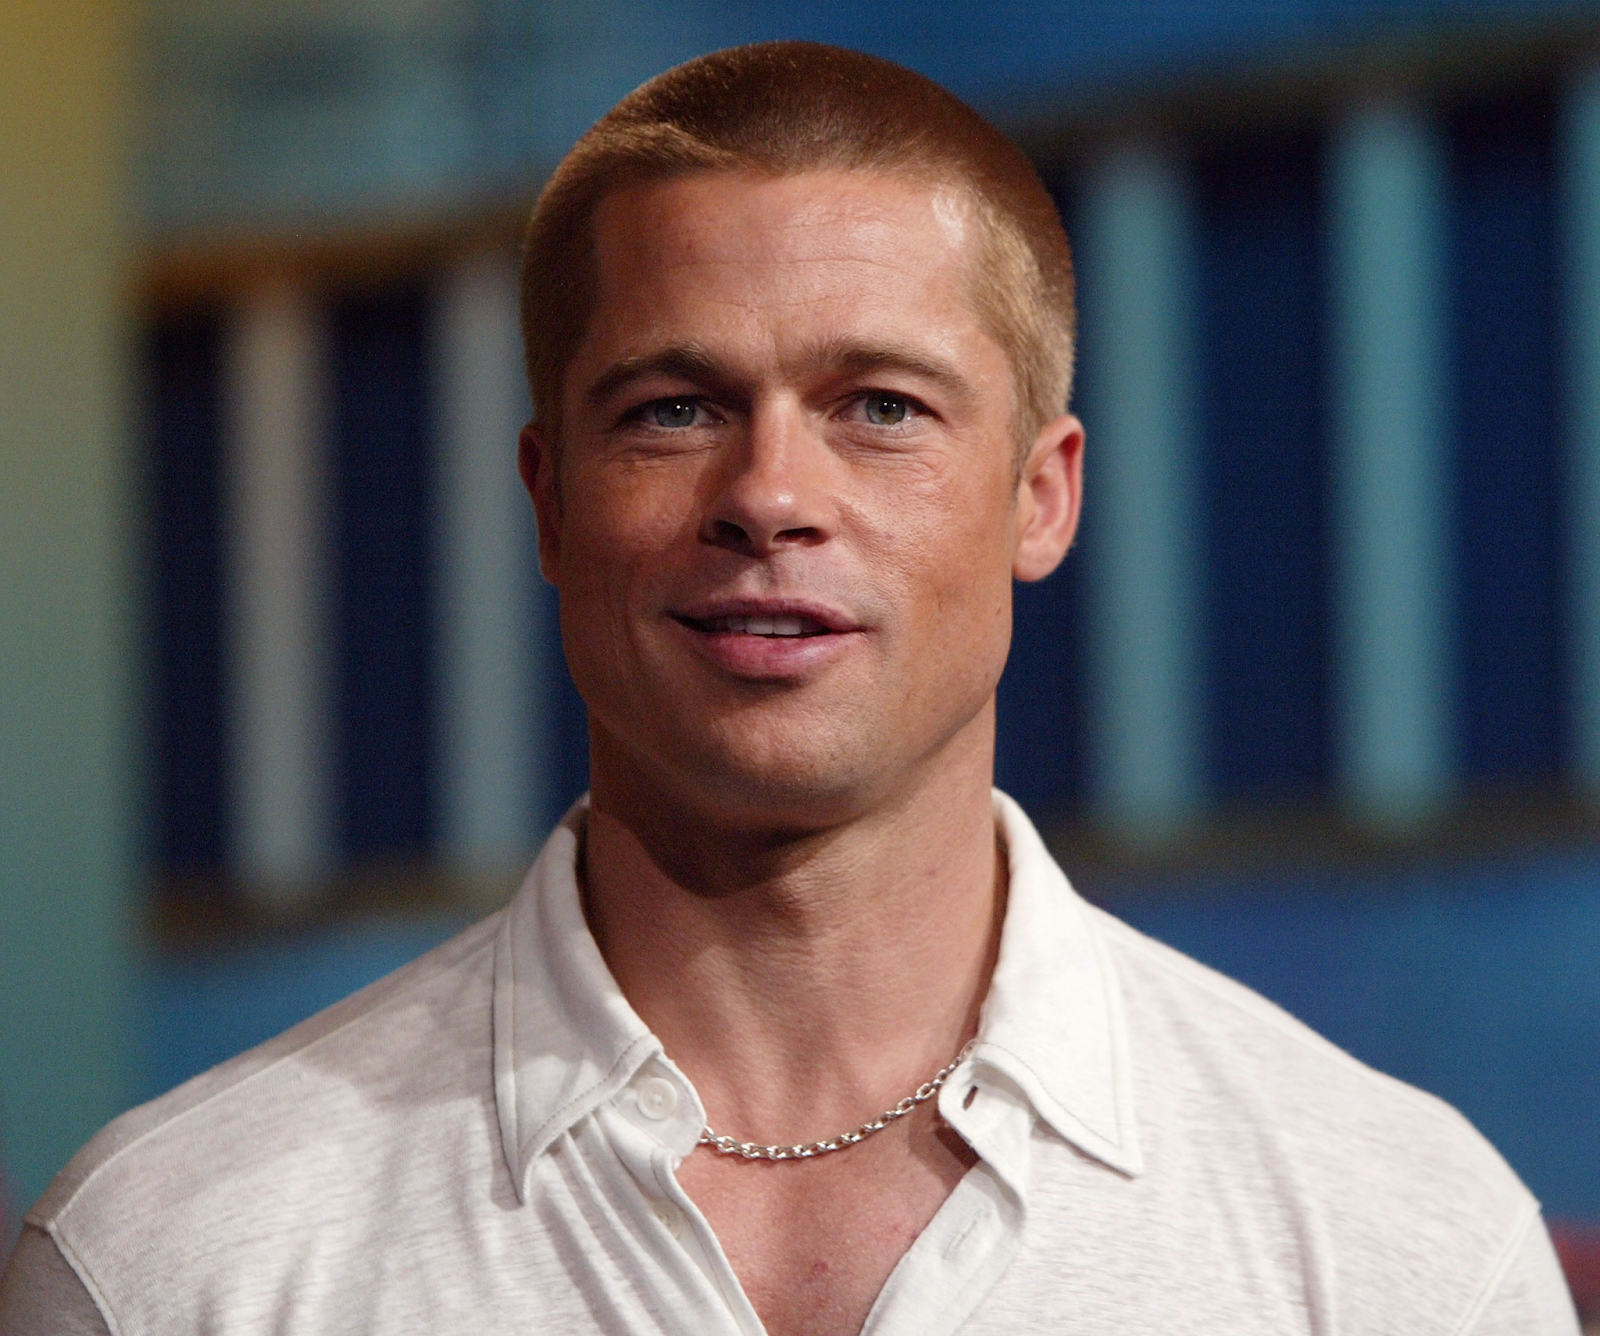 Siêu sao Brad Pitt đặc biệt nam tính mạnh mẽ với loại tóc Buzz cut 